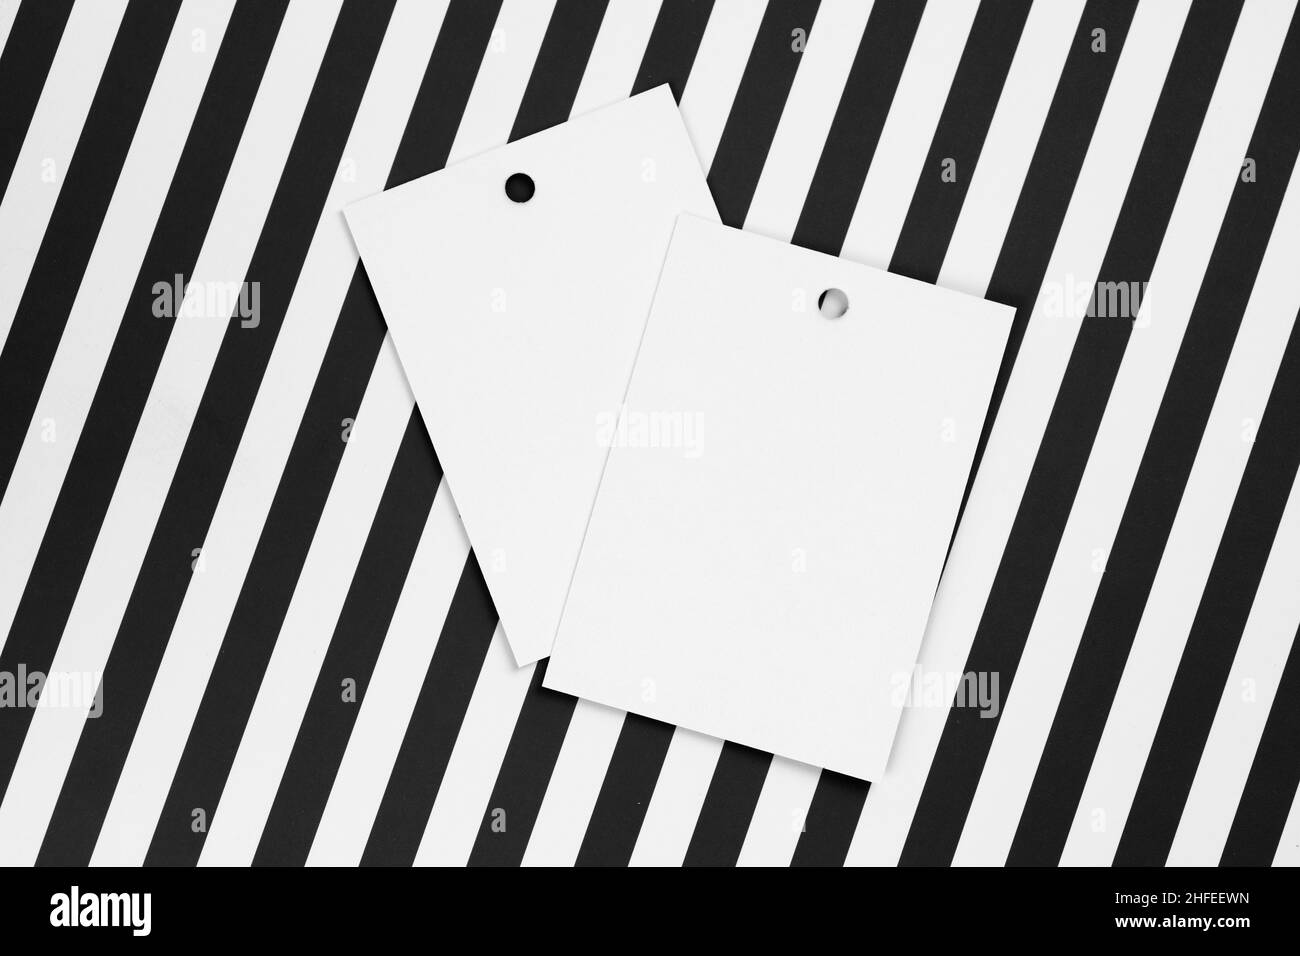 Deux étiquettes blanches en carton pour les vêtements avec de petits trous dans la partie supérieure de chaque étiquette placée au centre sur fond blanc et noir.Maquette d'étiquette Banque D'Images